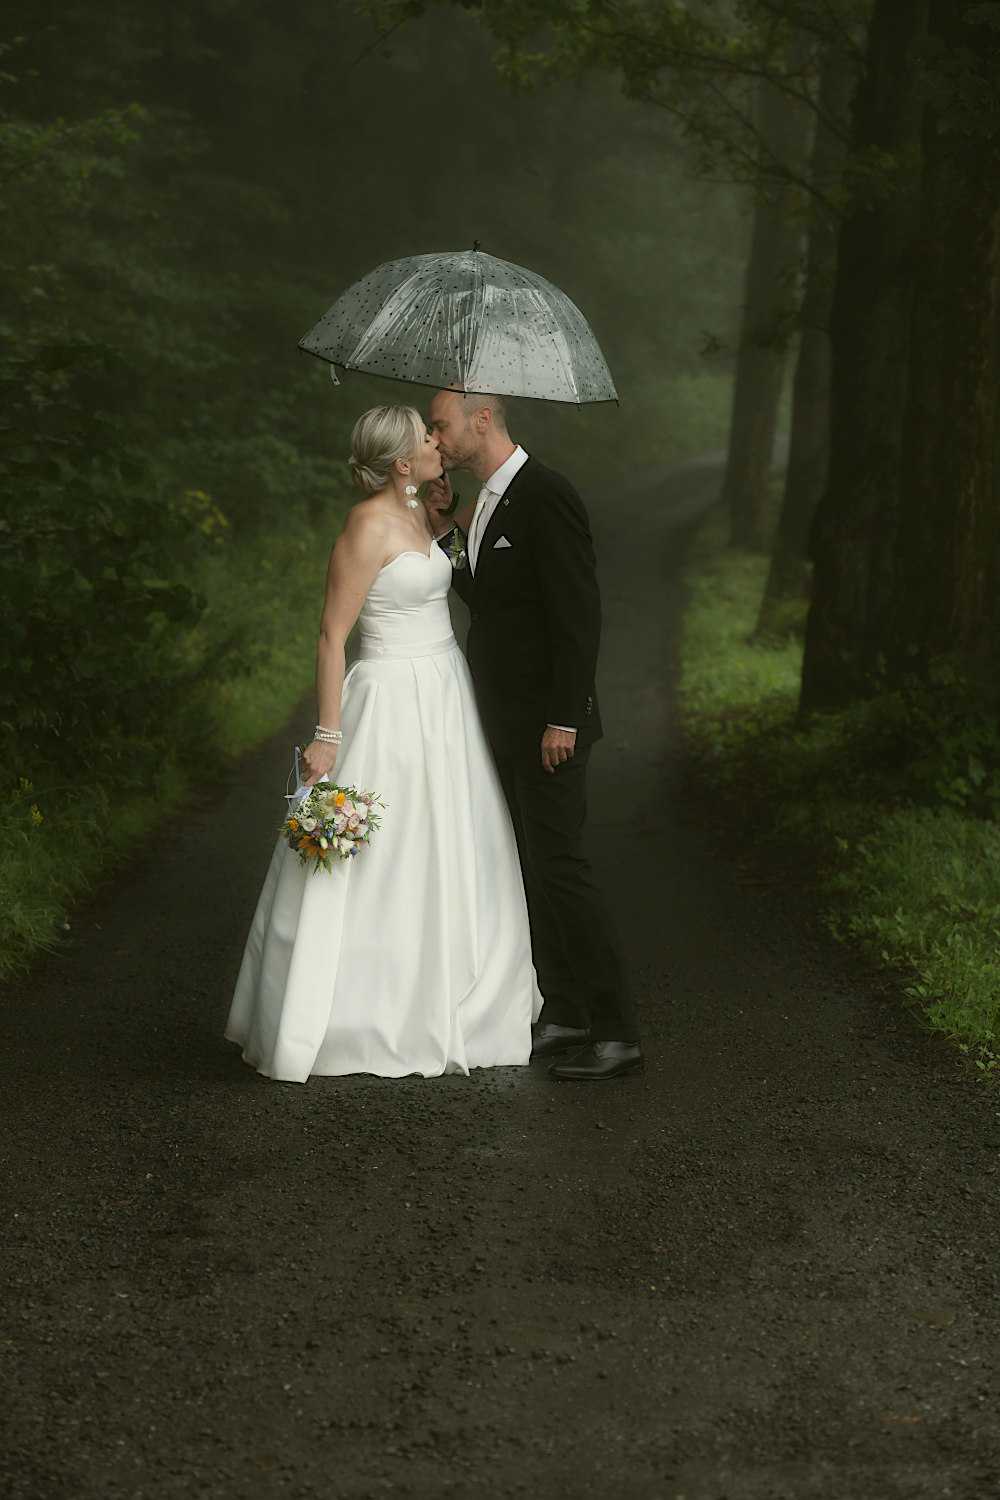 Jedna deštivá, ale krásná svatba